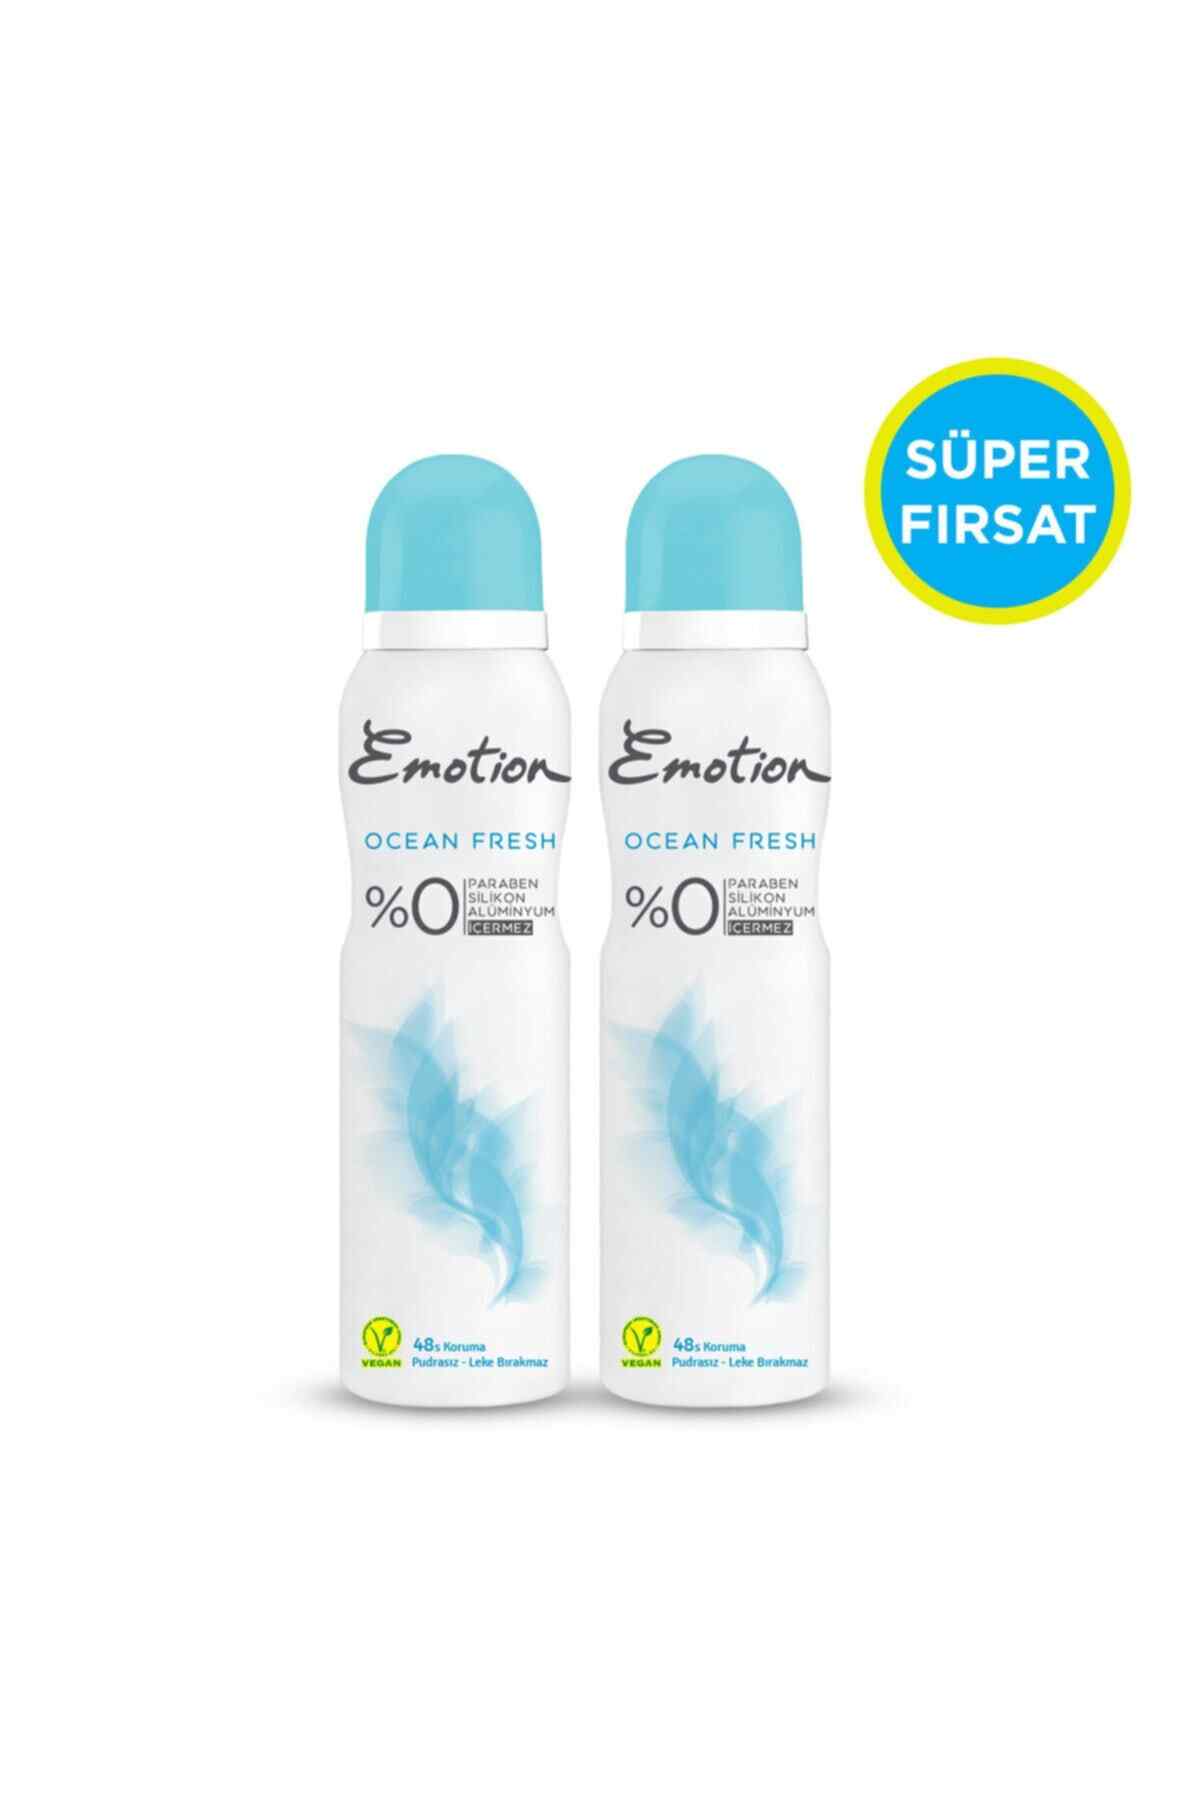 Emotion Ocean Fresh 3lü Kadın Deodorant 150 ml x 3 506568-3